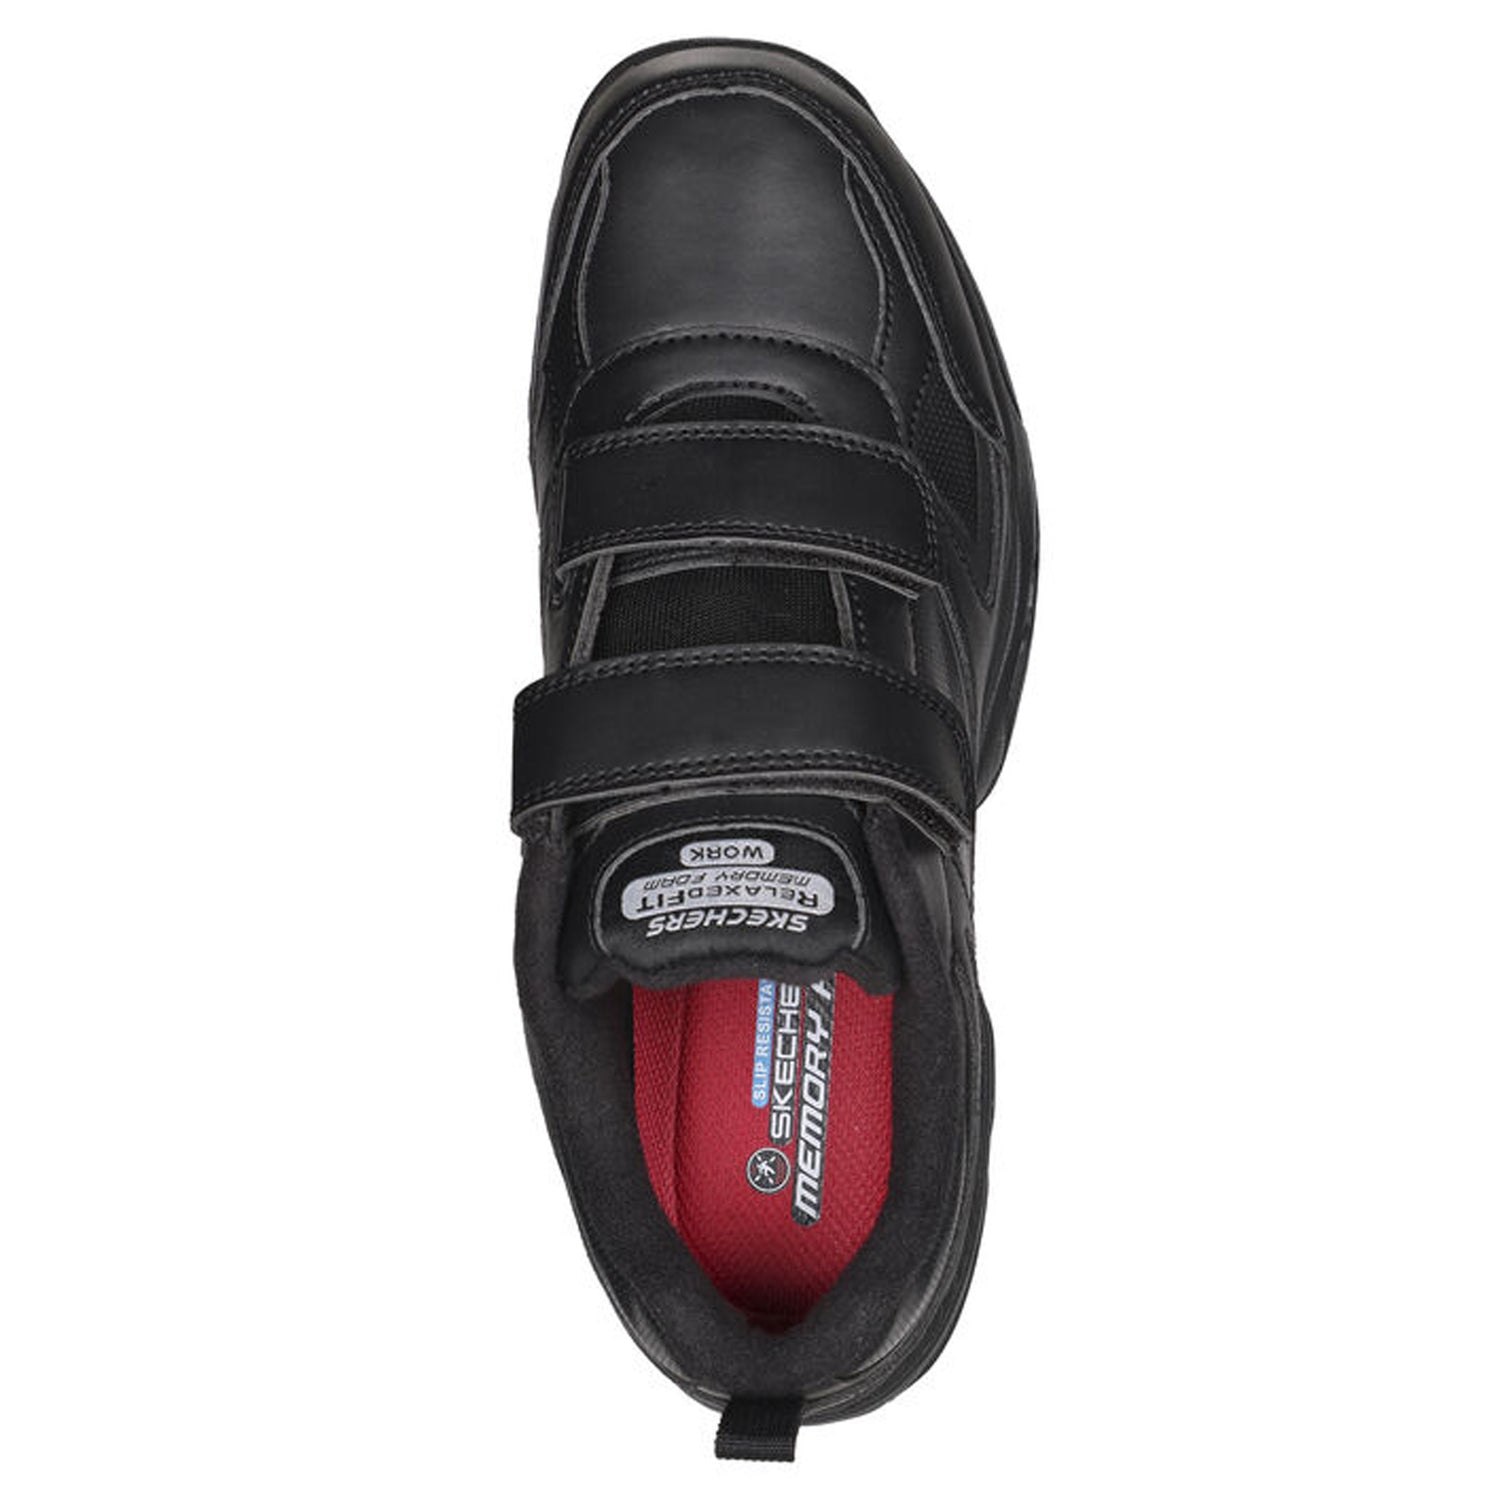 Peltz Shoes  Men's Skechers Dighton – Rolind SR Work Shoe – Extra Wide Width Black 200200WW-BLK